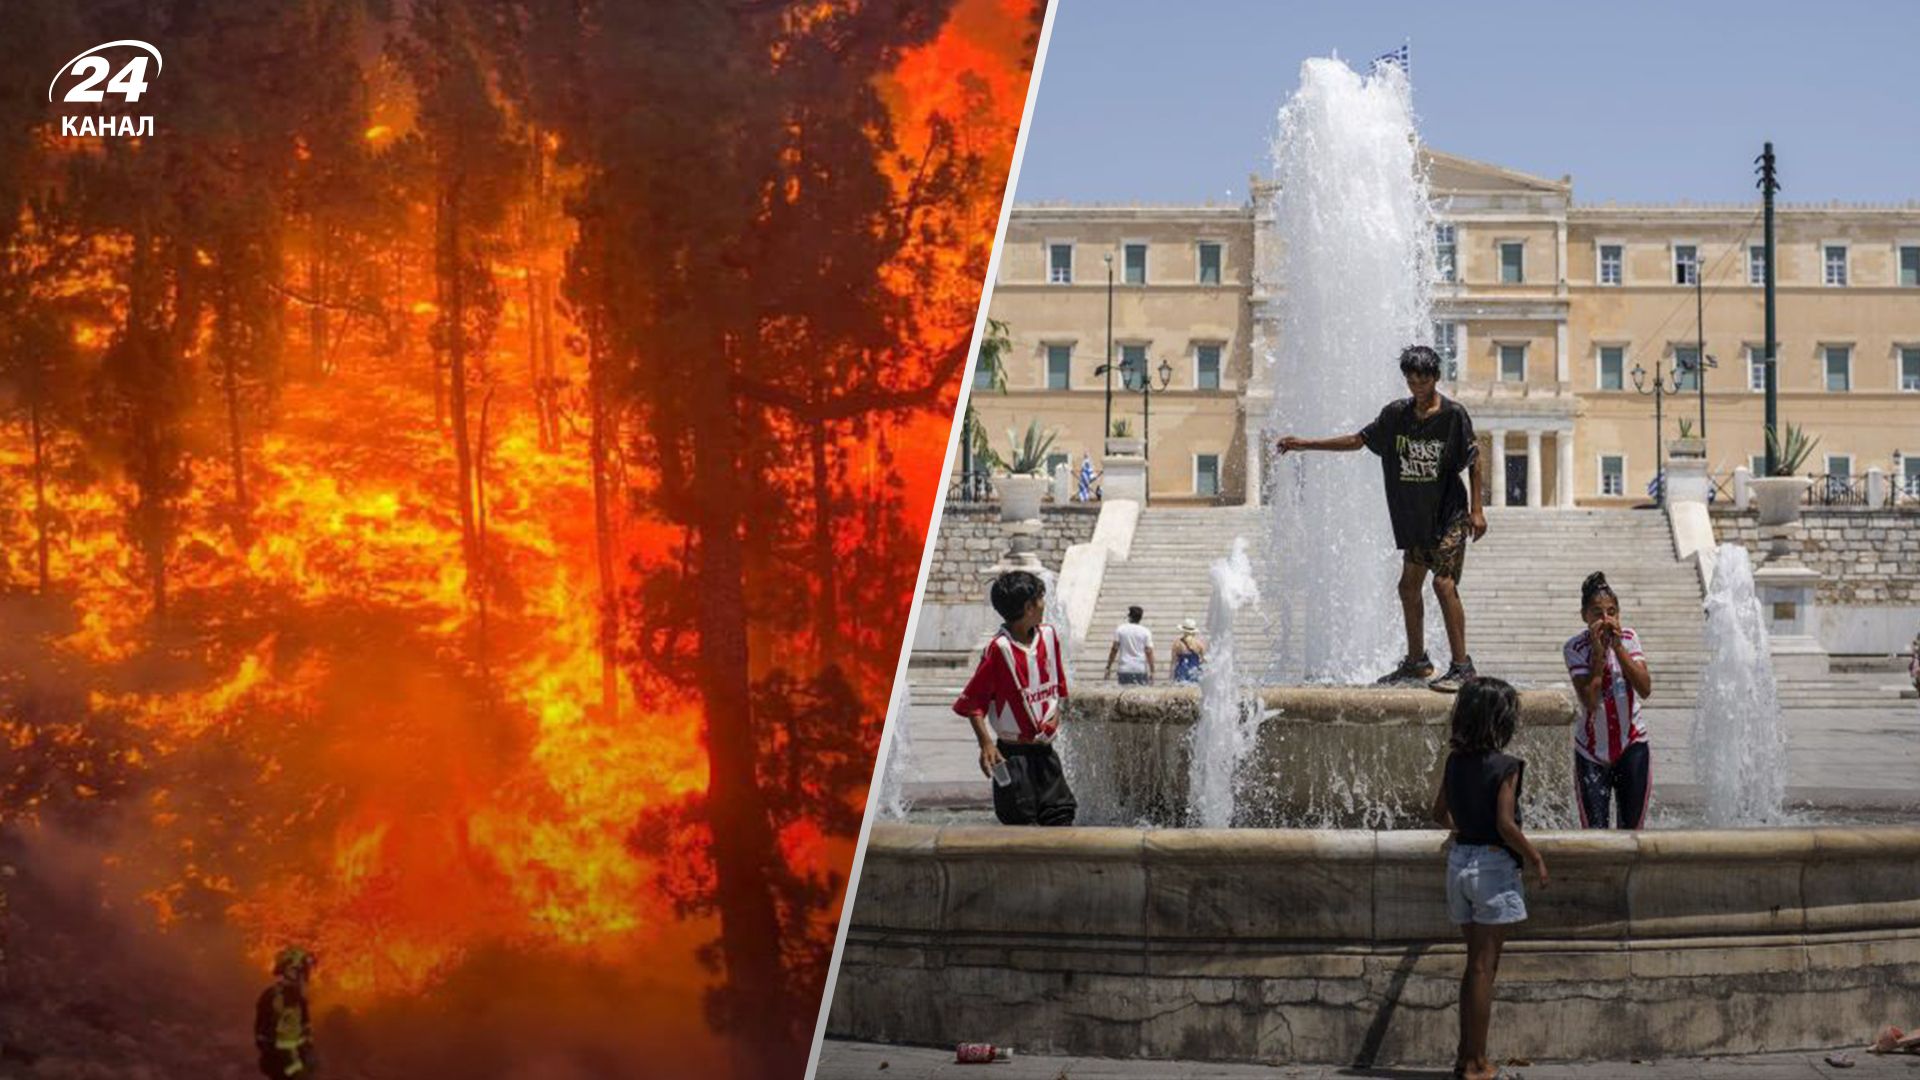 Аномальная жара на юге Европы: в Италии объявлен красный уровень опасности - 24 Канал